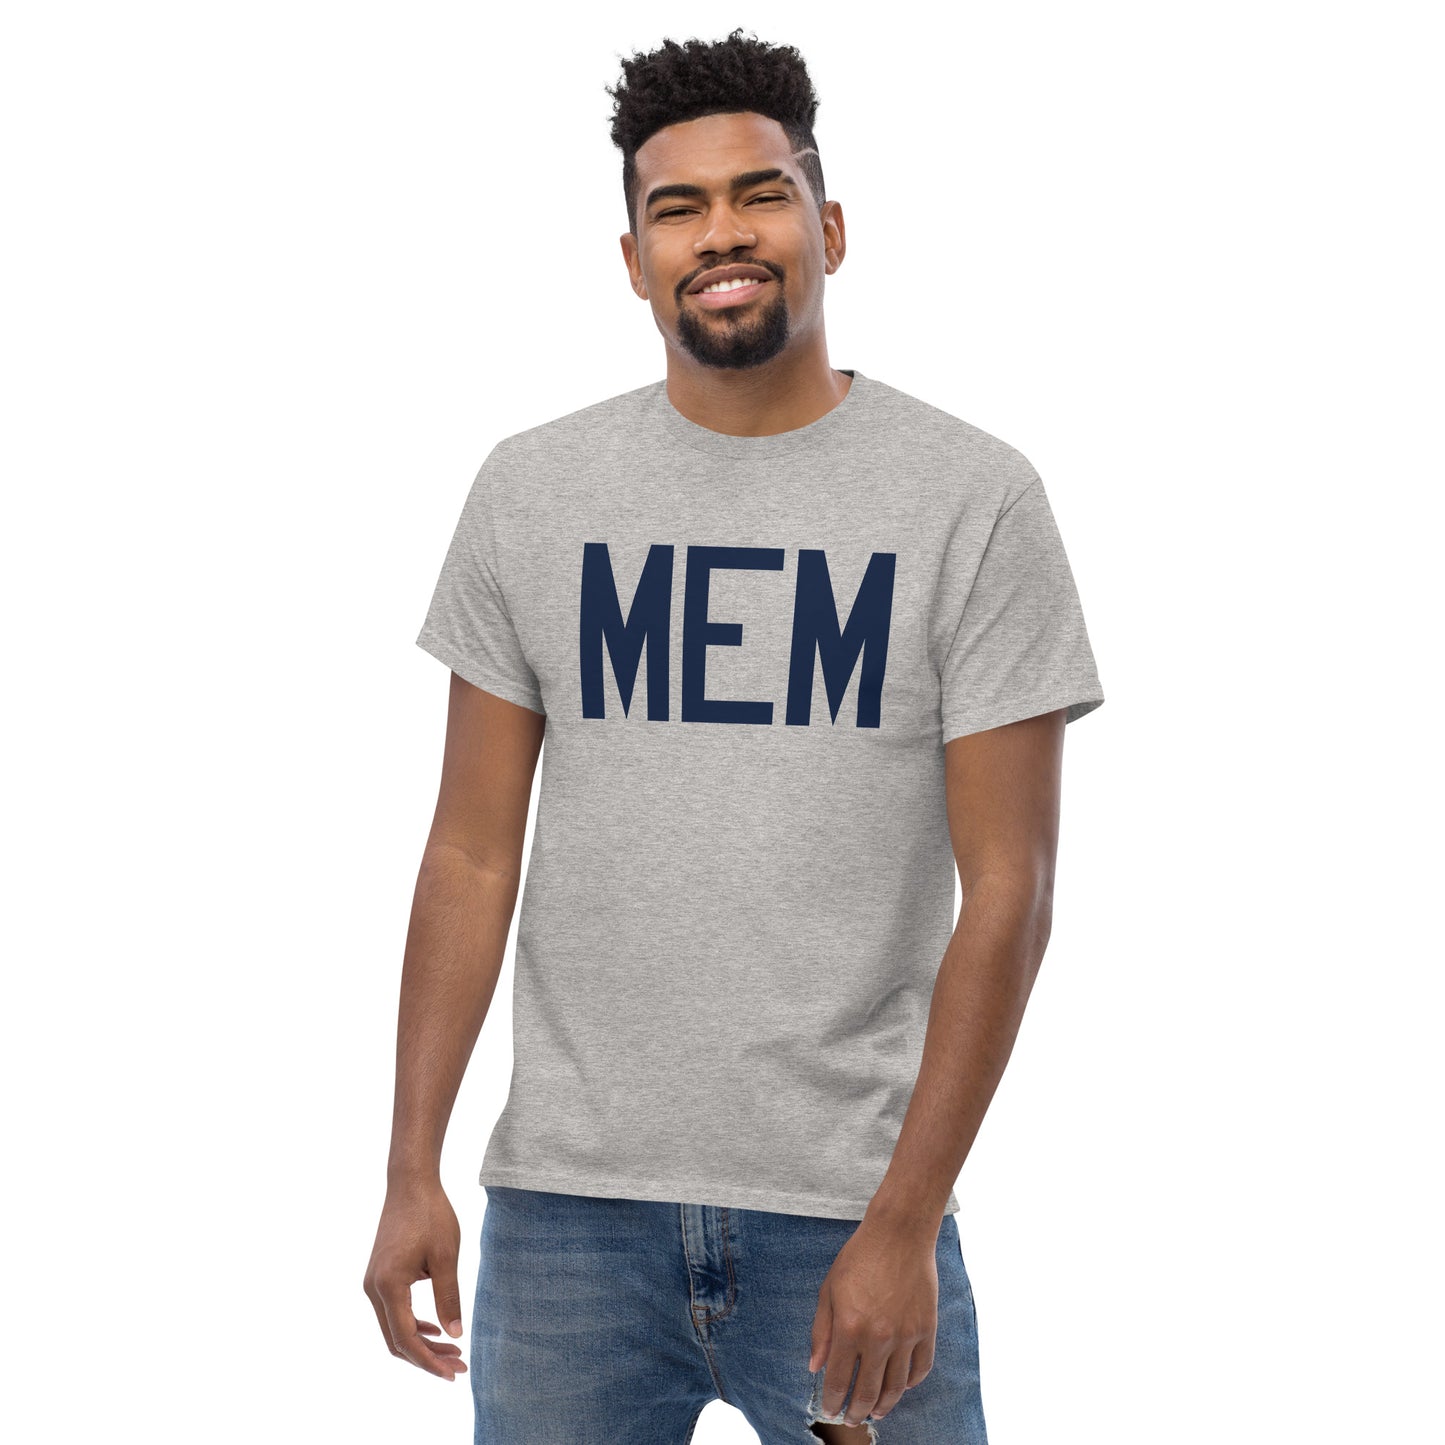 Aviation-Theme Men's T-Shirt - Navy Blue Graphic • MEM Memphis • YHM Designs - Image 06